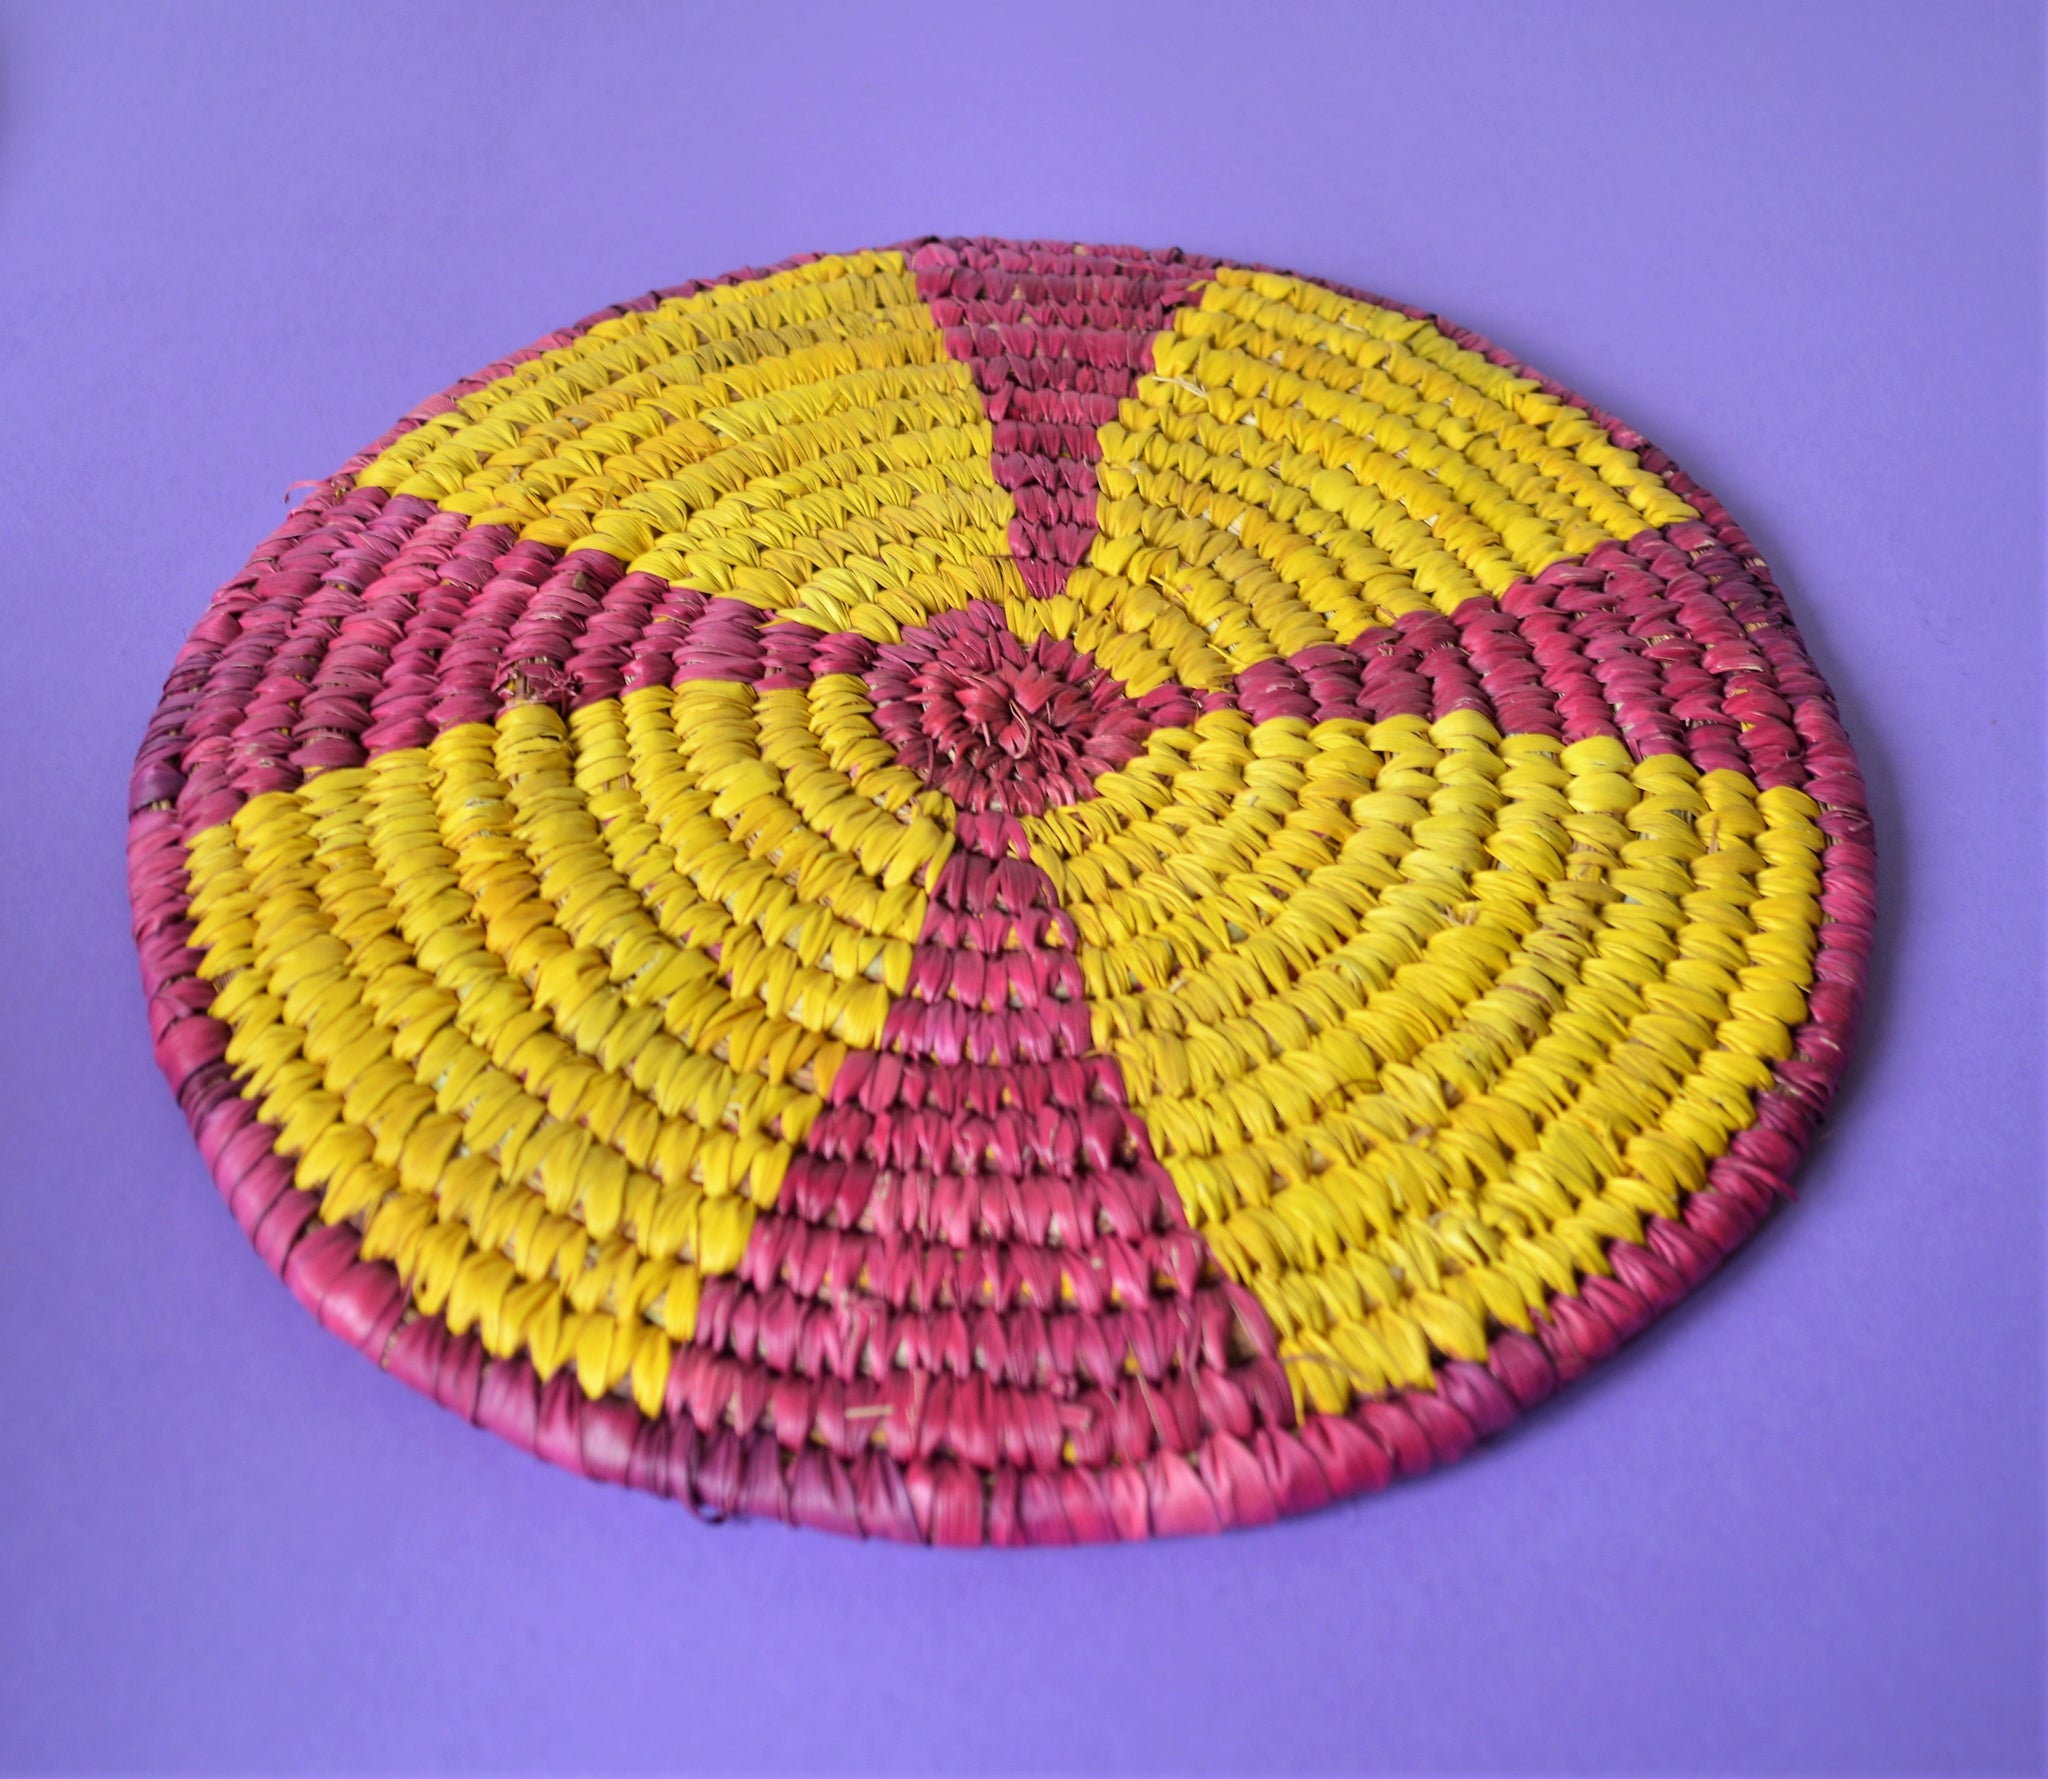 Woven wall basket (purple)